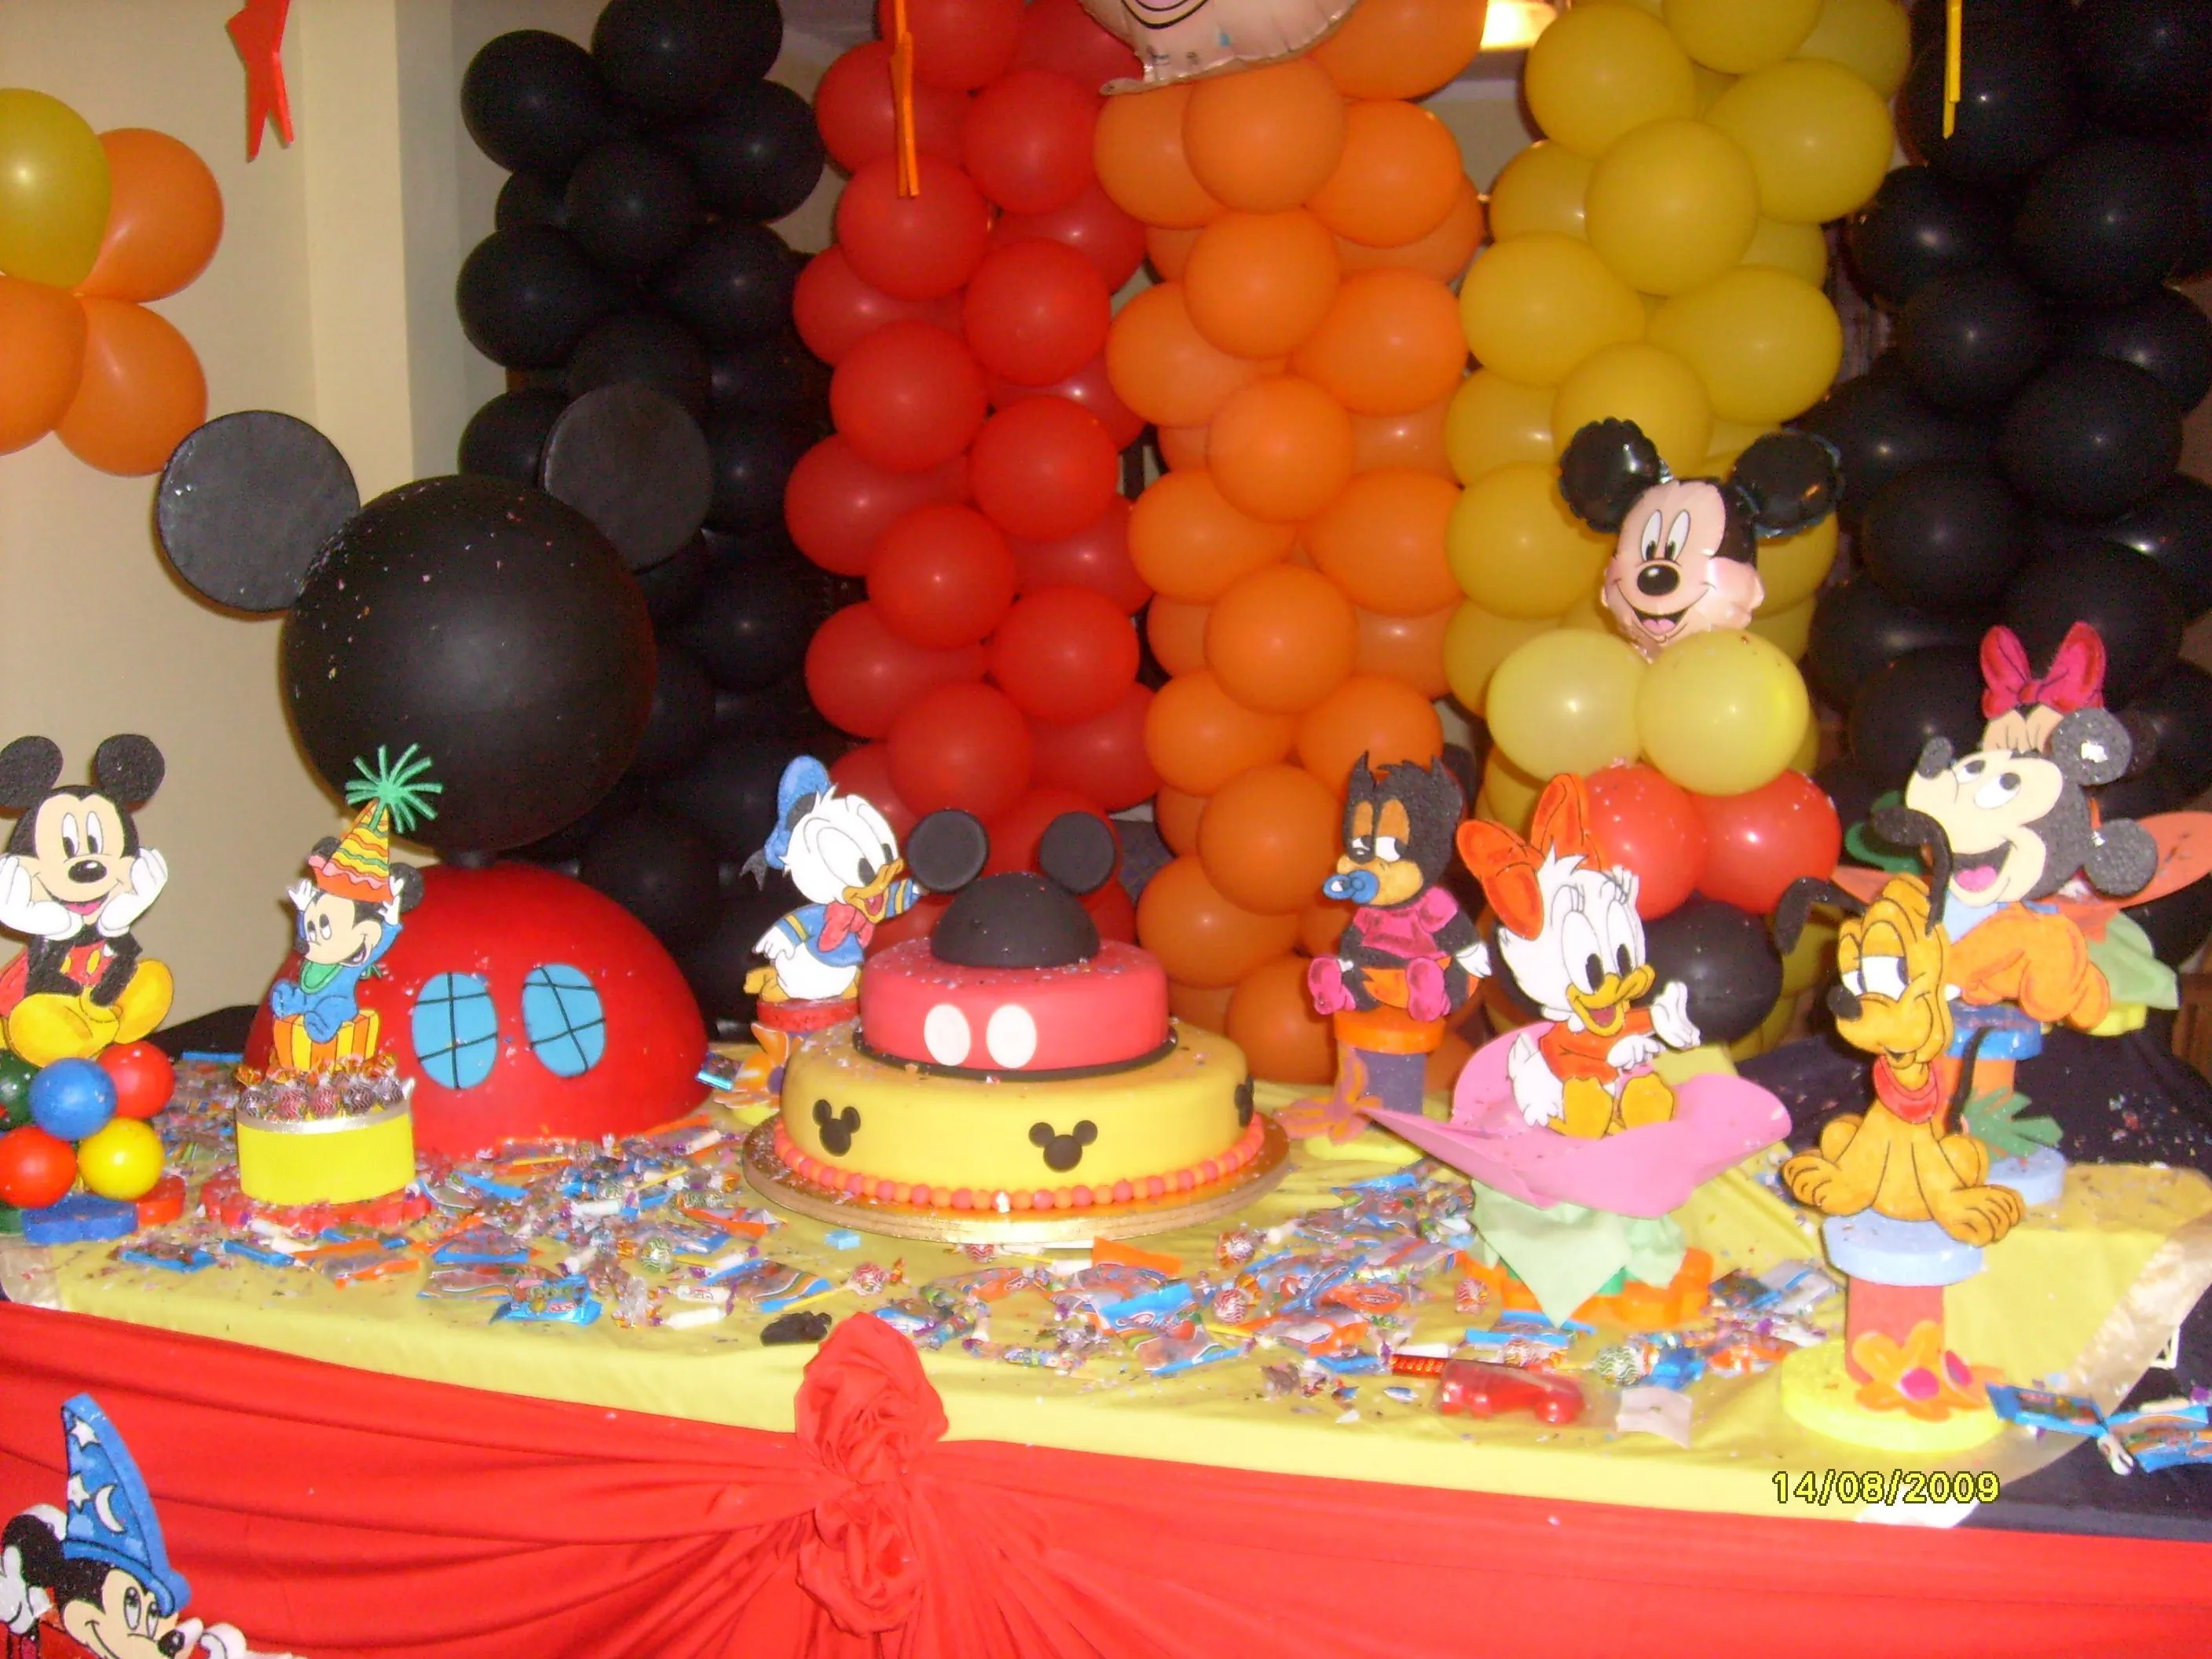 decoración fiesta mickey mouse - Buscar con Google | Mikey ...